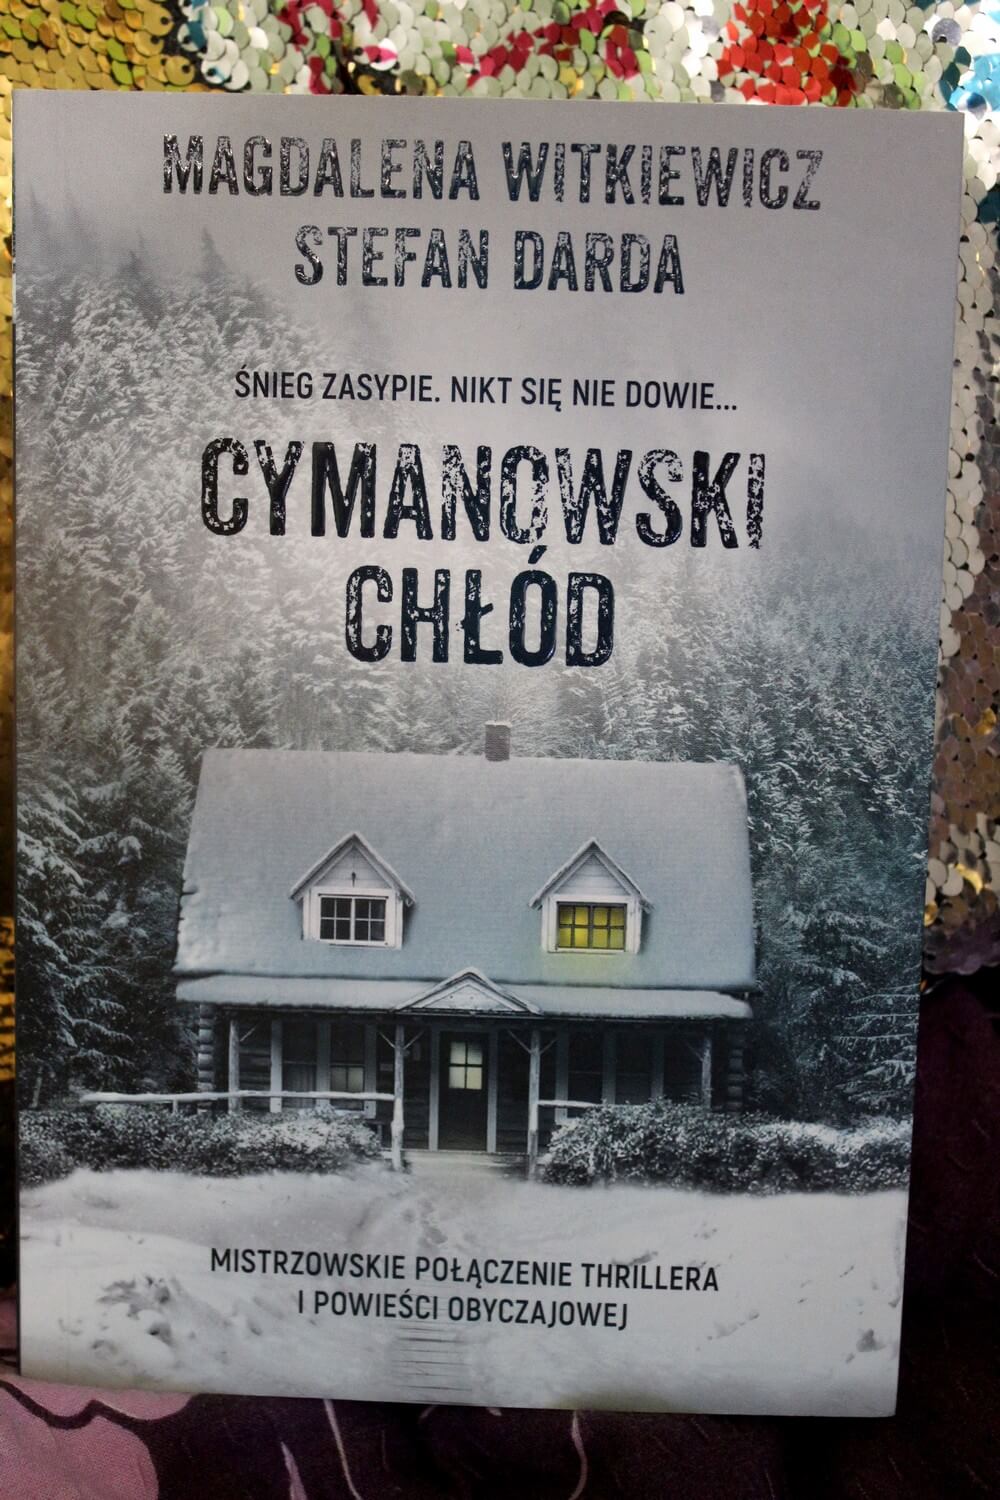 Cymanowski chłód Magdalena Witkiewicz Stefan Darda - recenzja